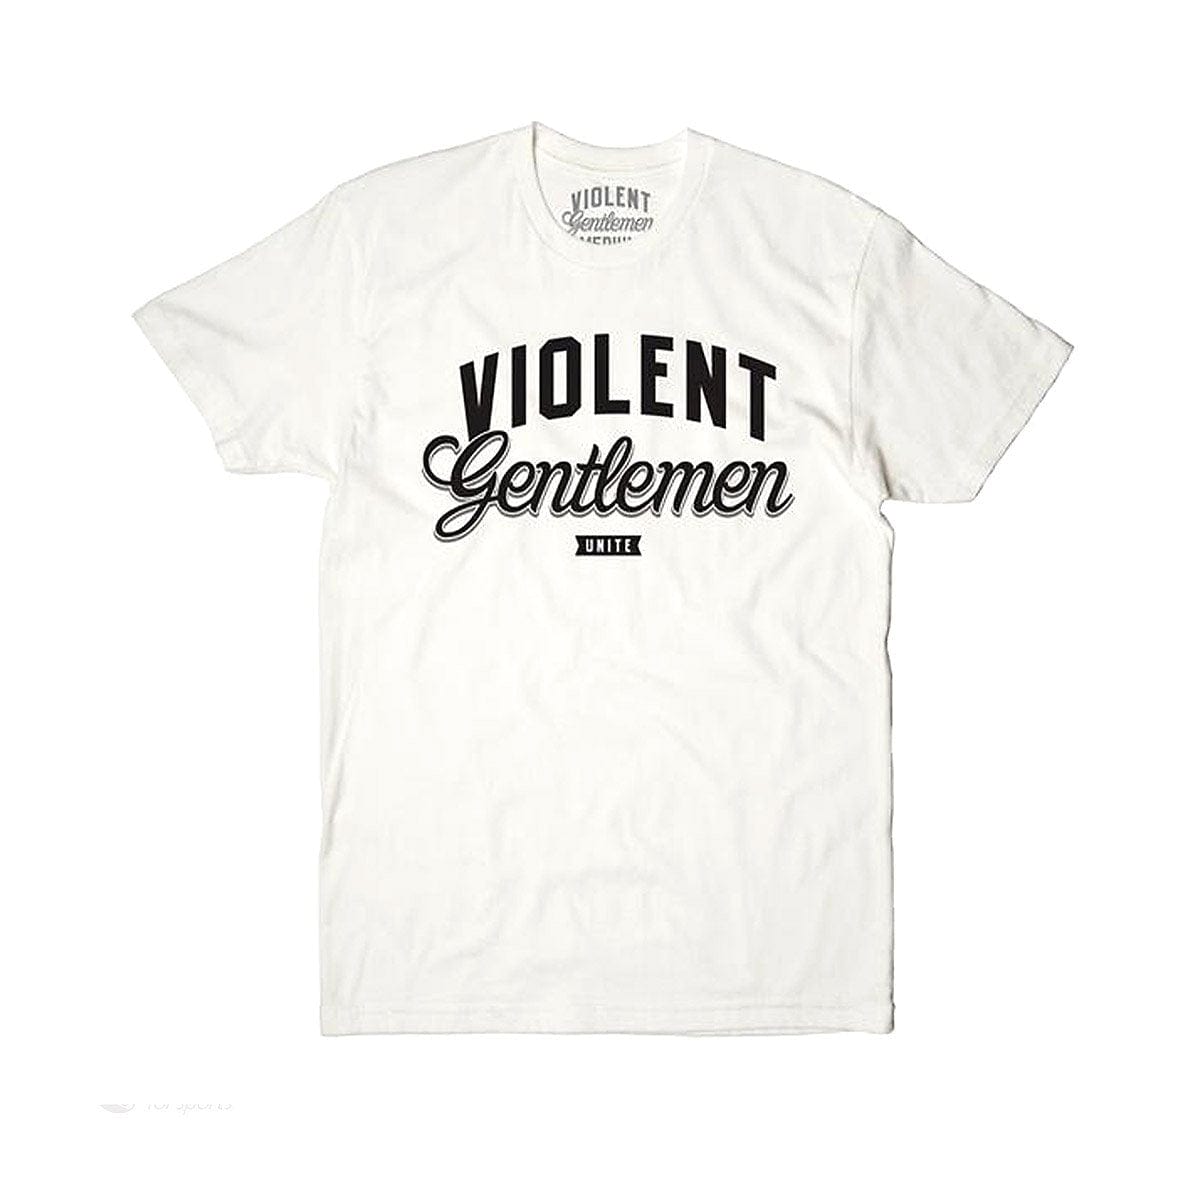 Violent Gentlemen Unite Men's Shirt